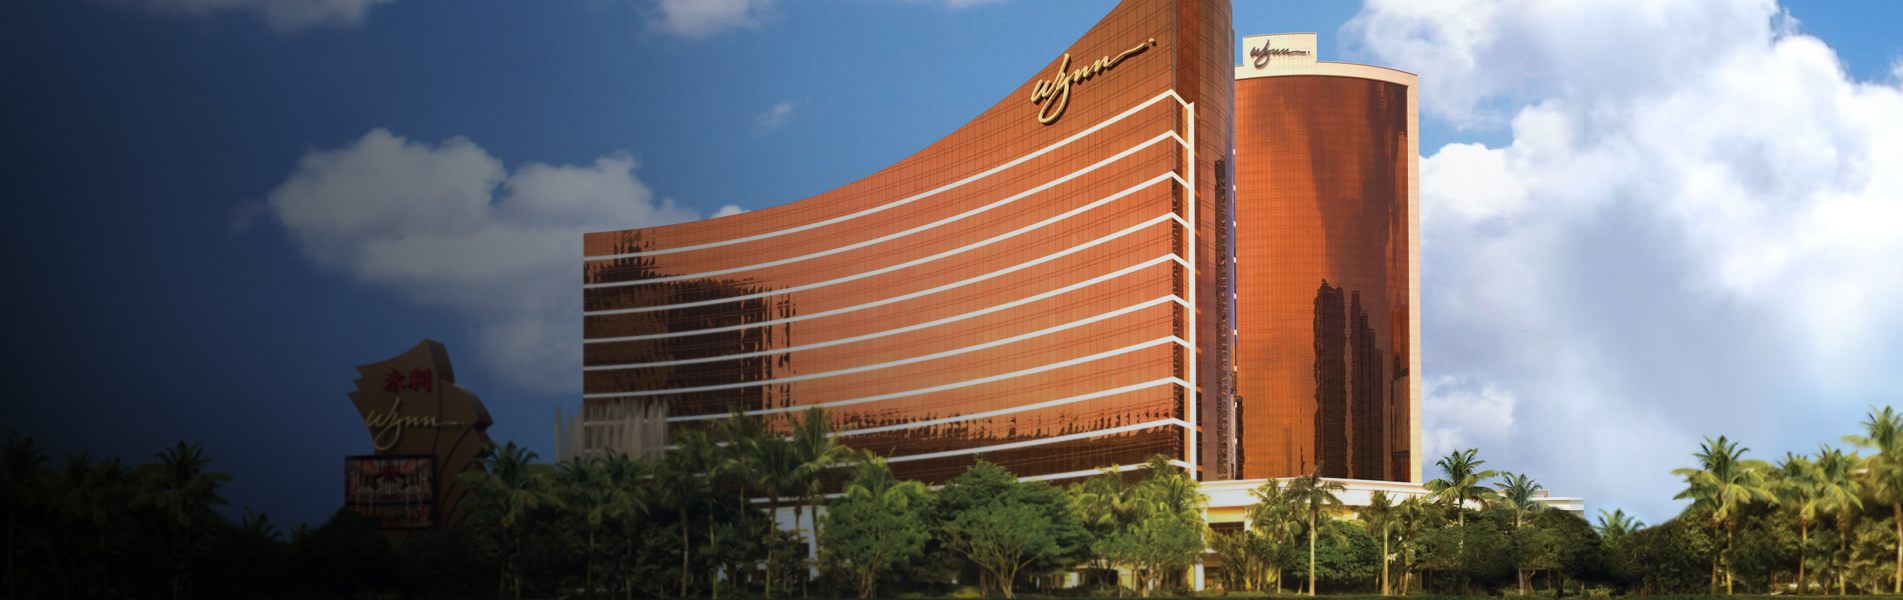 Wynn Casino Macau 1